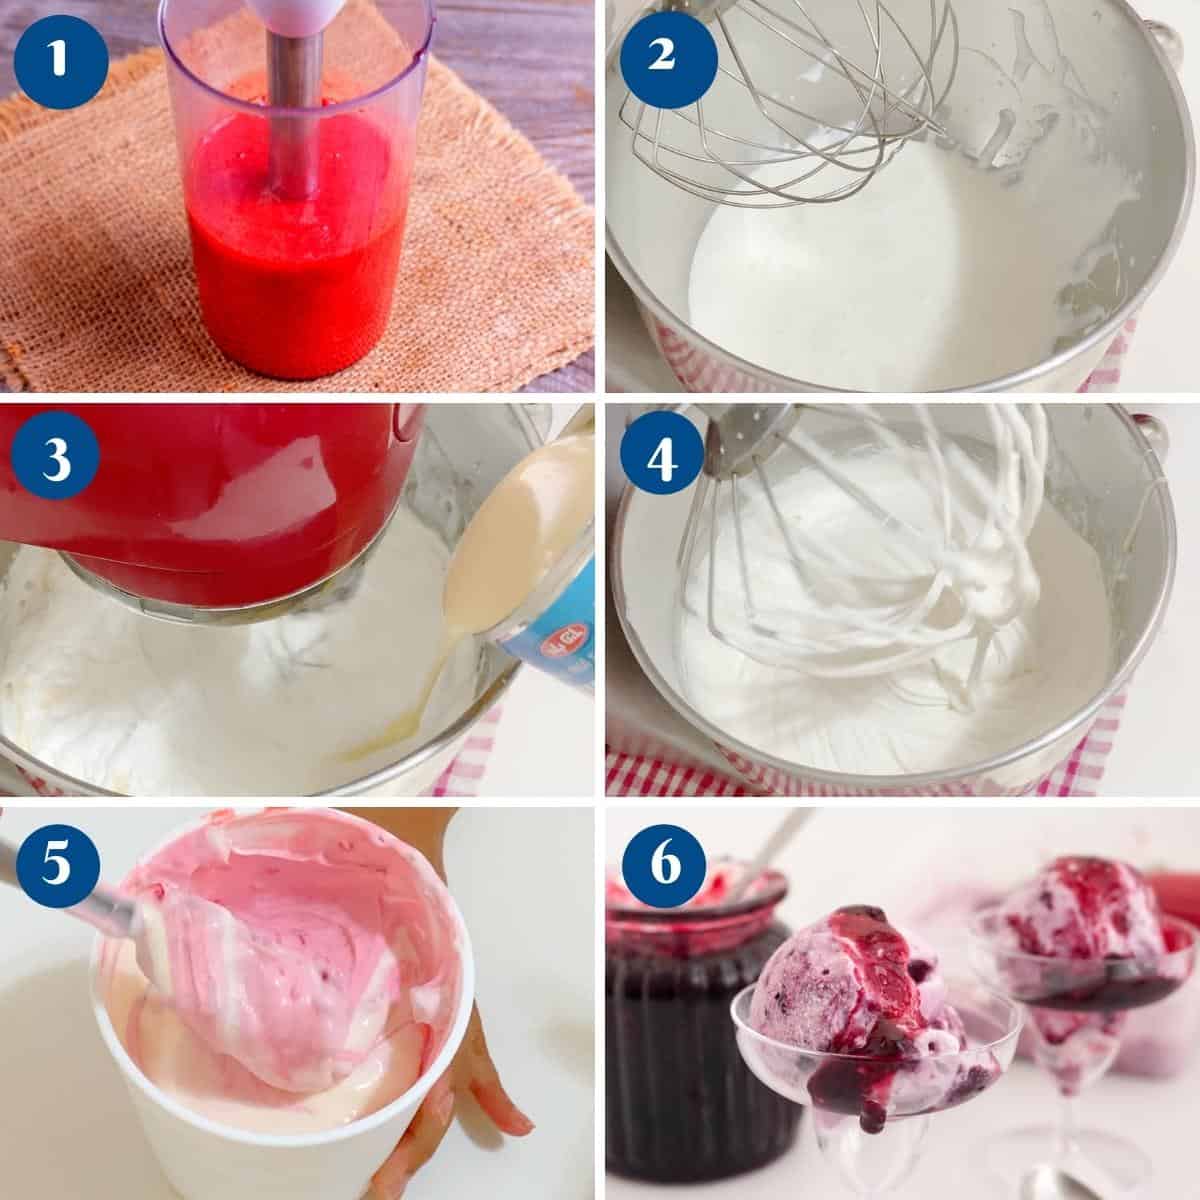 Progress pictures making cherry ice cream.